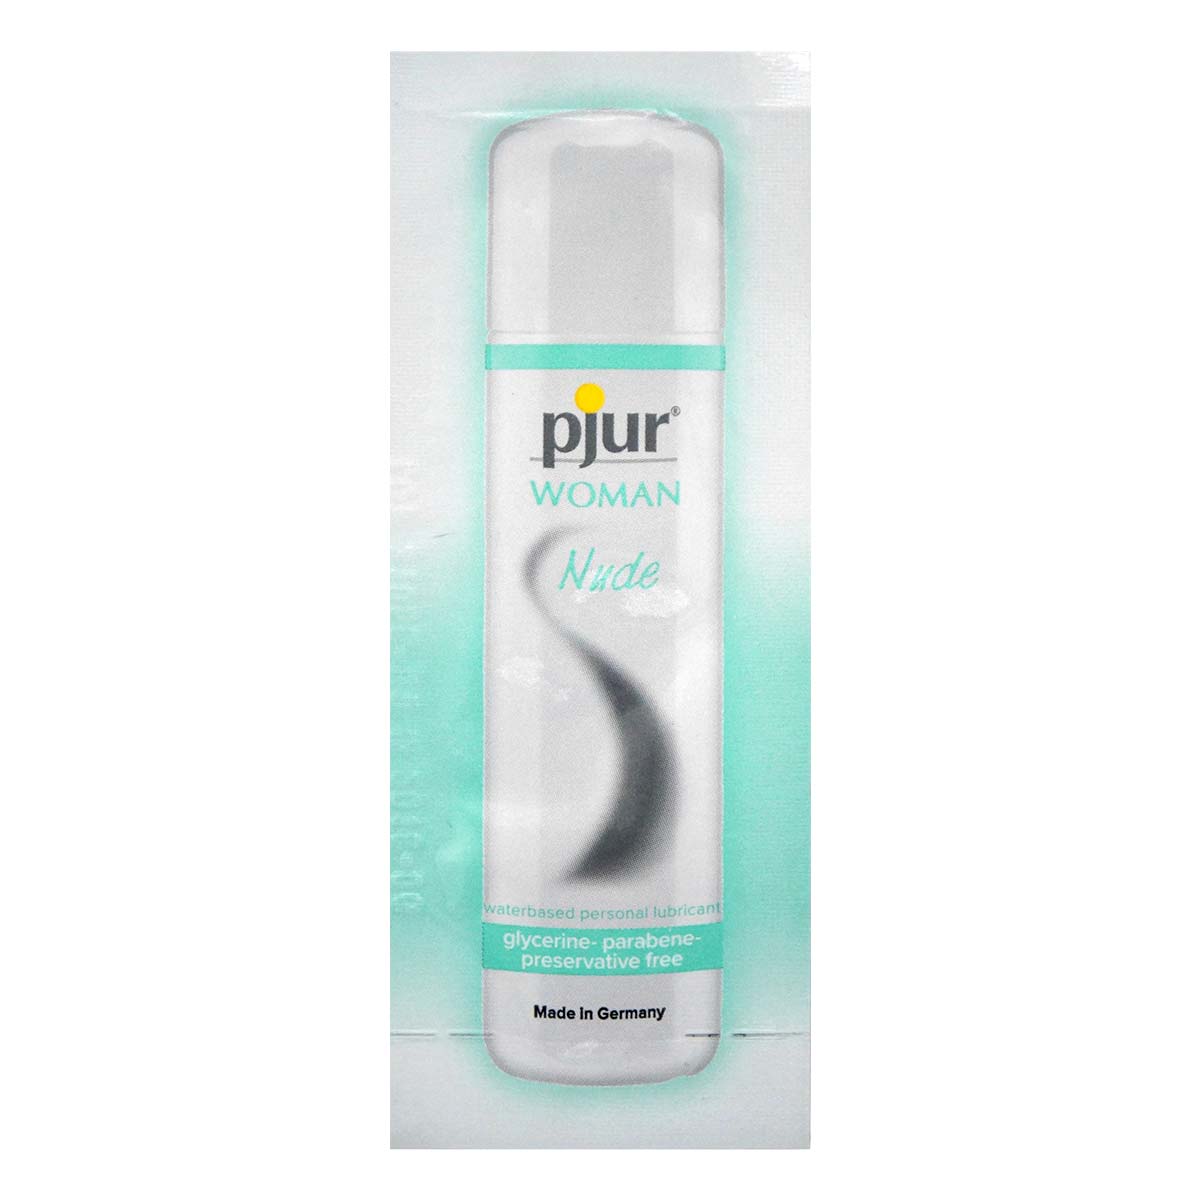 pjur WOMAN Nude 2ml 水性潤滑液-p_2